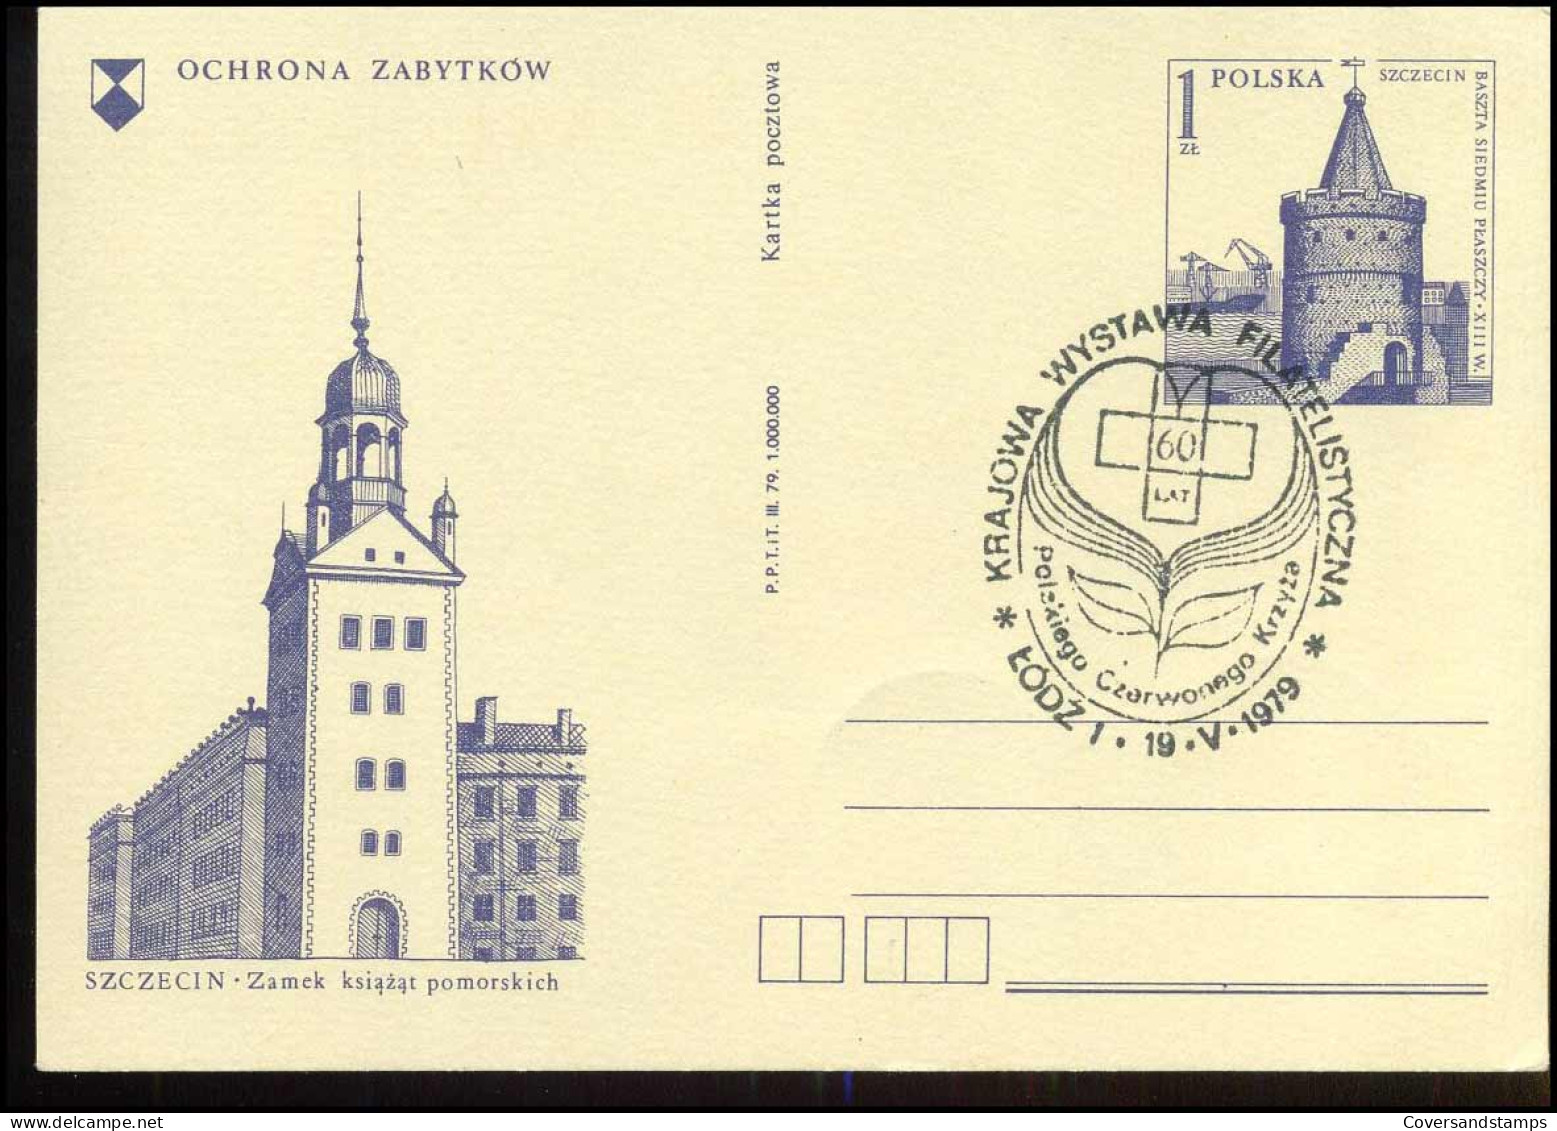 Post Card - Ochrona Zabytkow - Ganzsachen